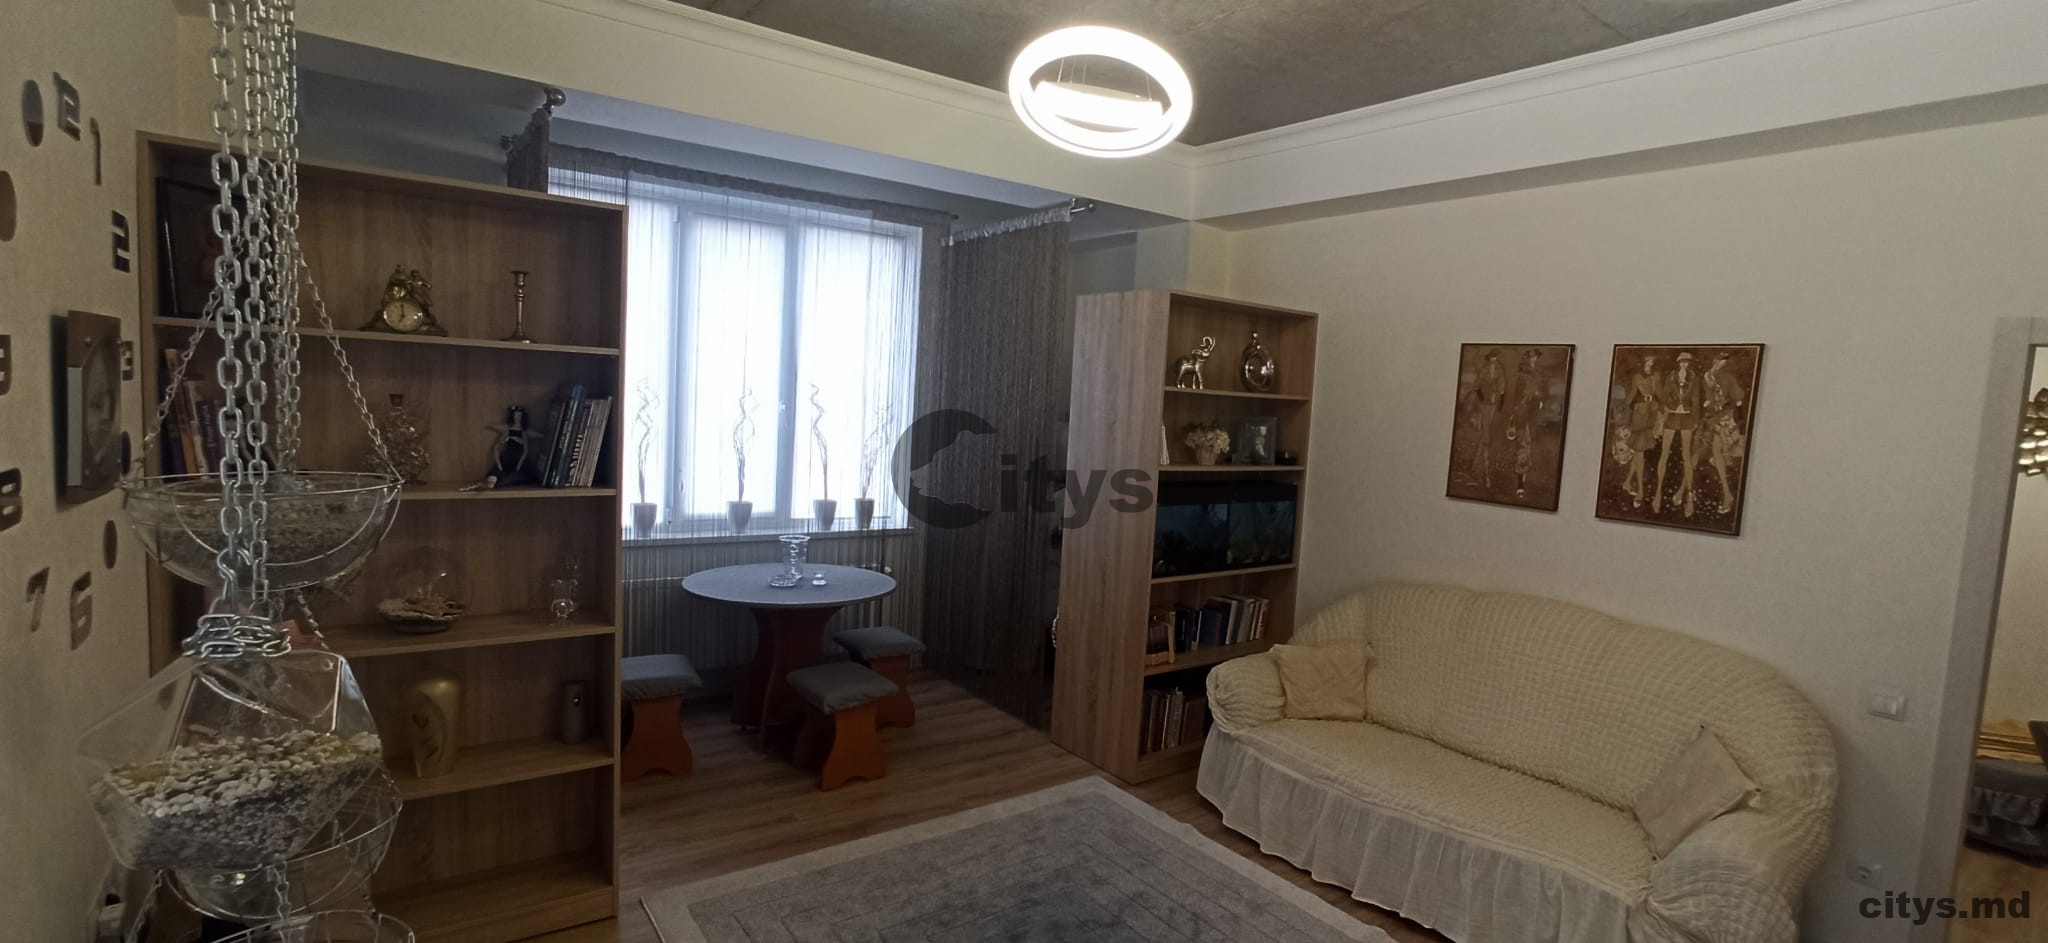 Аренда 1 комнатная квартира, 47м², Moldova, Chișinău, strada Ciocârliei photo 8